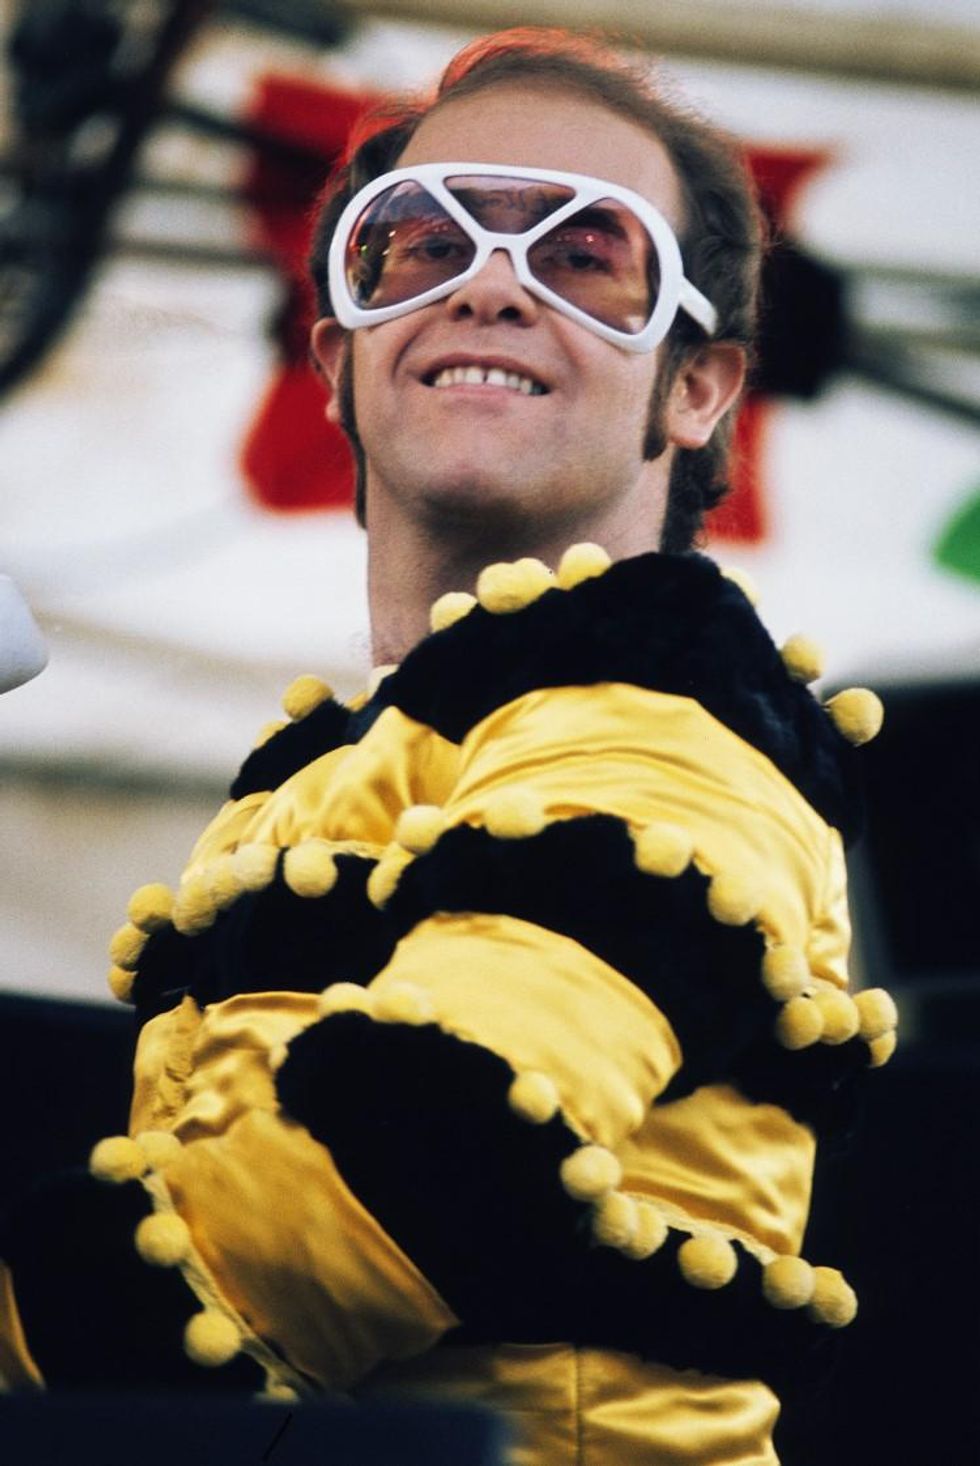 Elton John celebrates his 74th birthday.